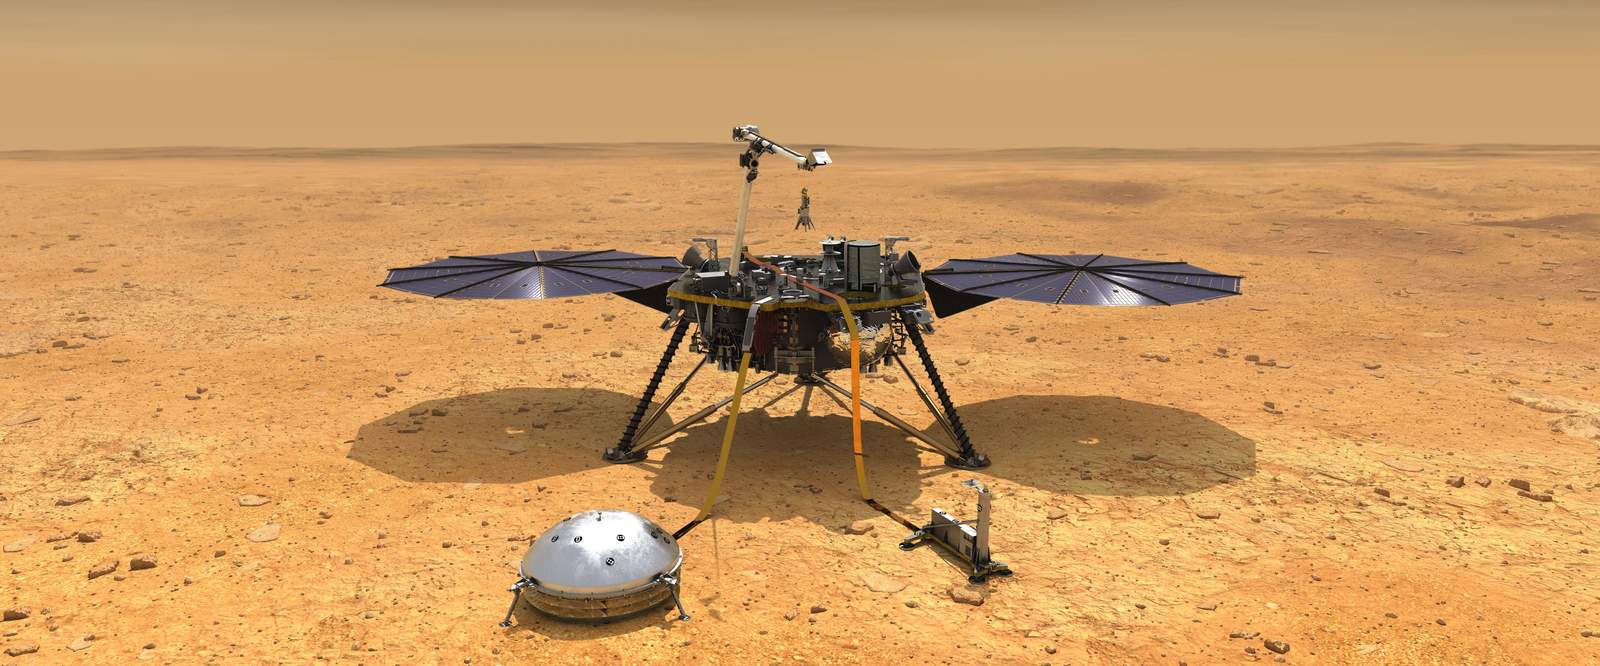 El modulo espacial InSight quiere estudiar específicamente el interior de Marte. (ARCHIVO) 